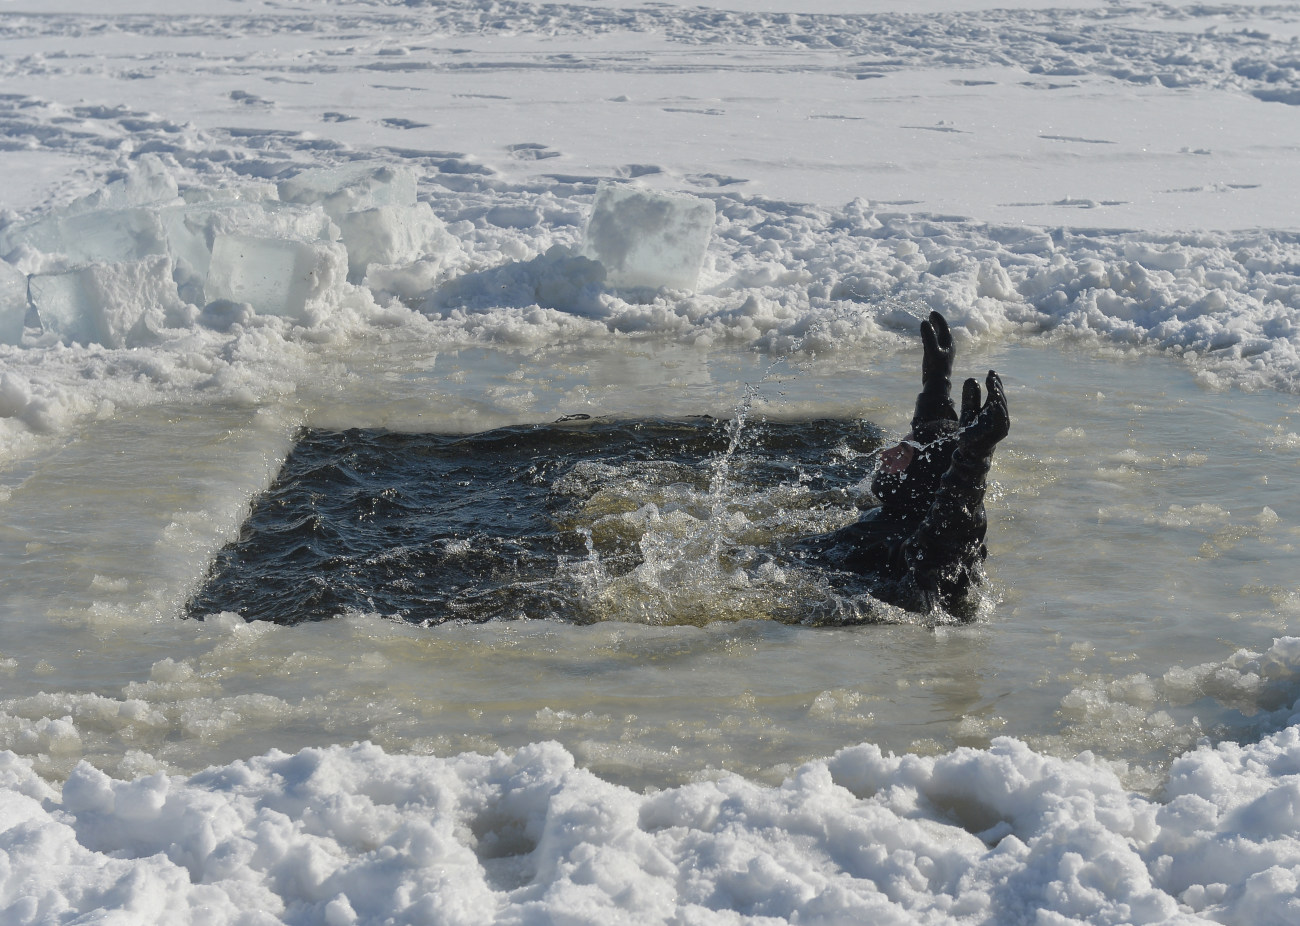 В Киеве инспекторы рыбоохранного патруля объяснили рыбакам, как вести себя на льду